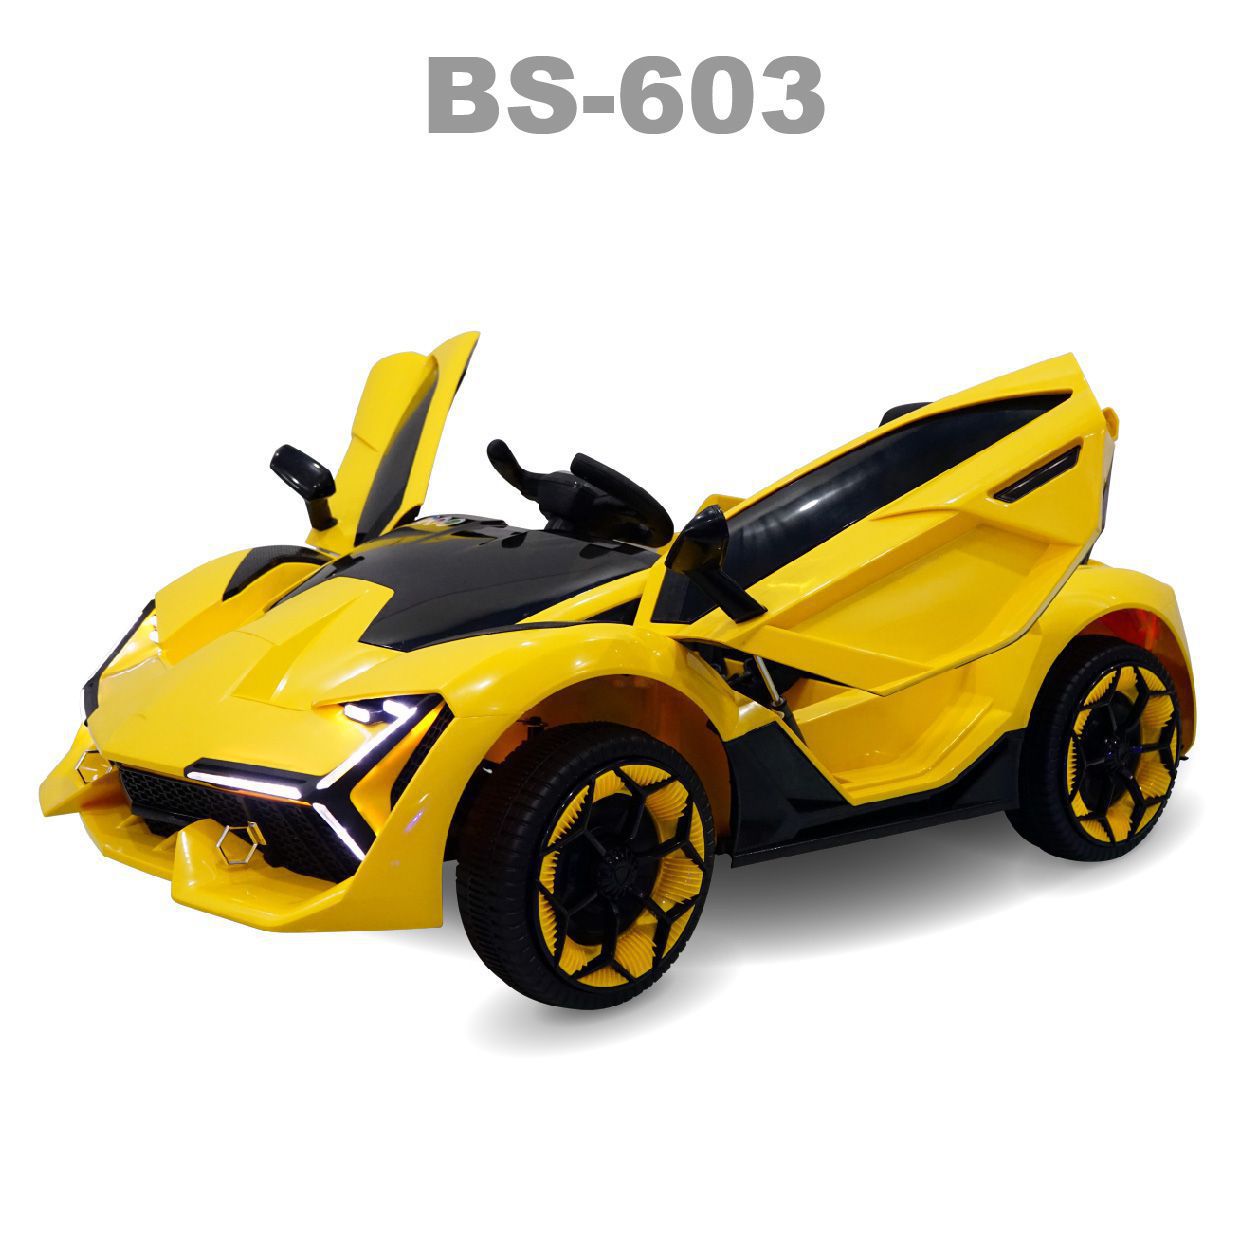 Xe ô tô điện BS-603 - Vàng